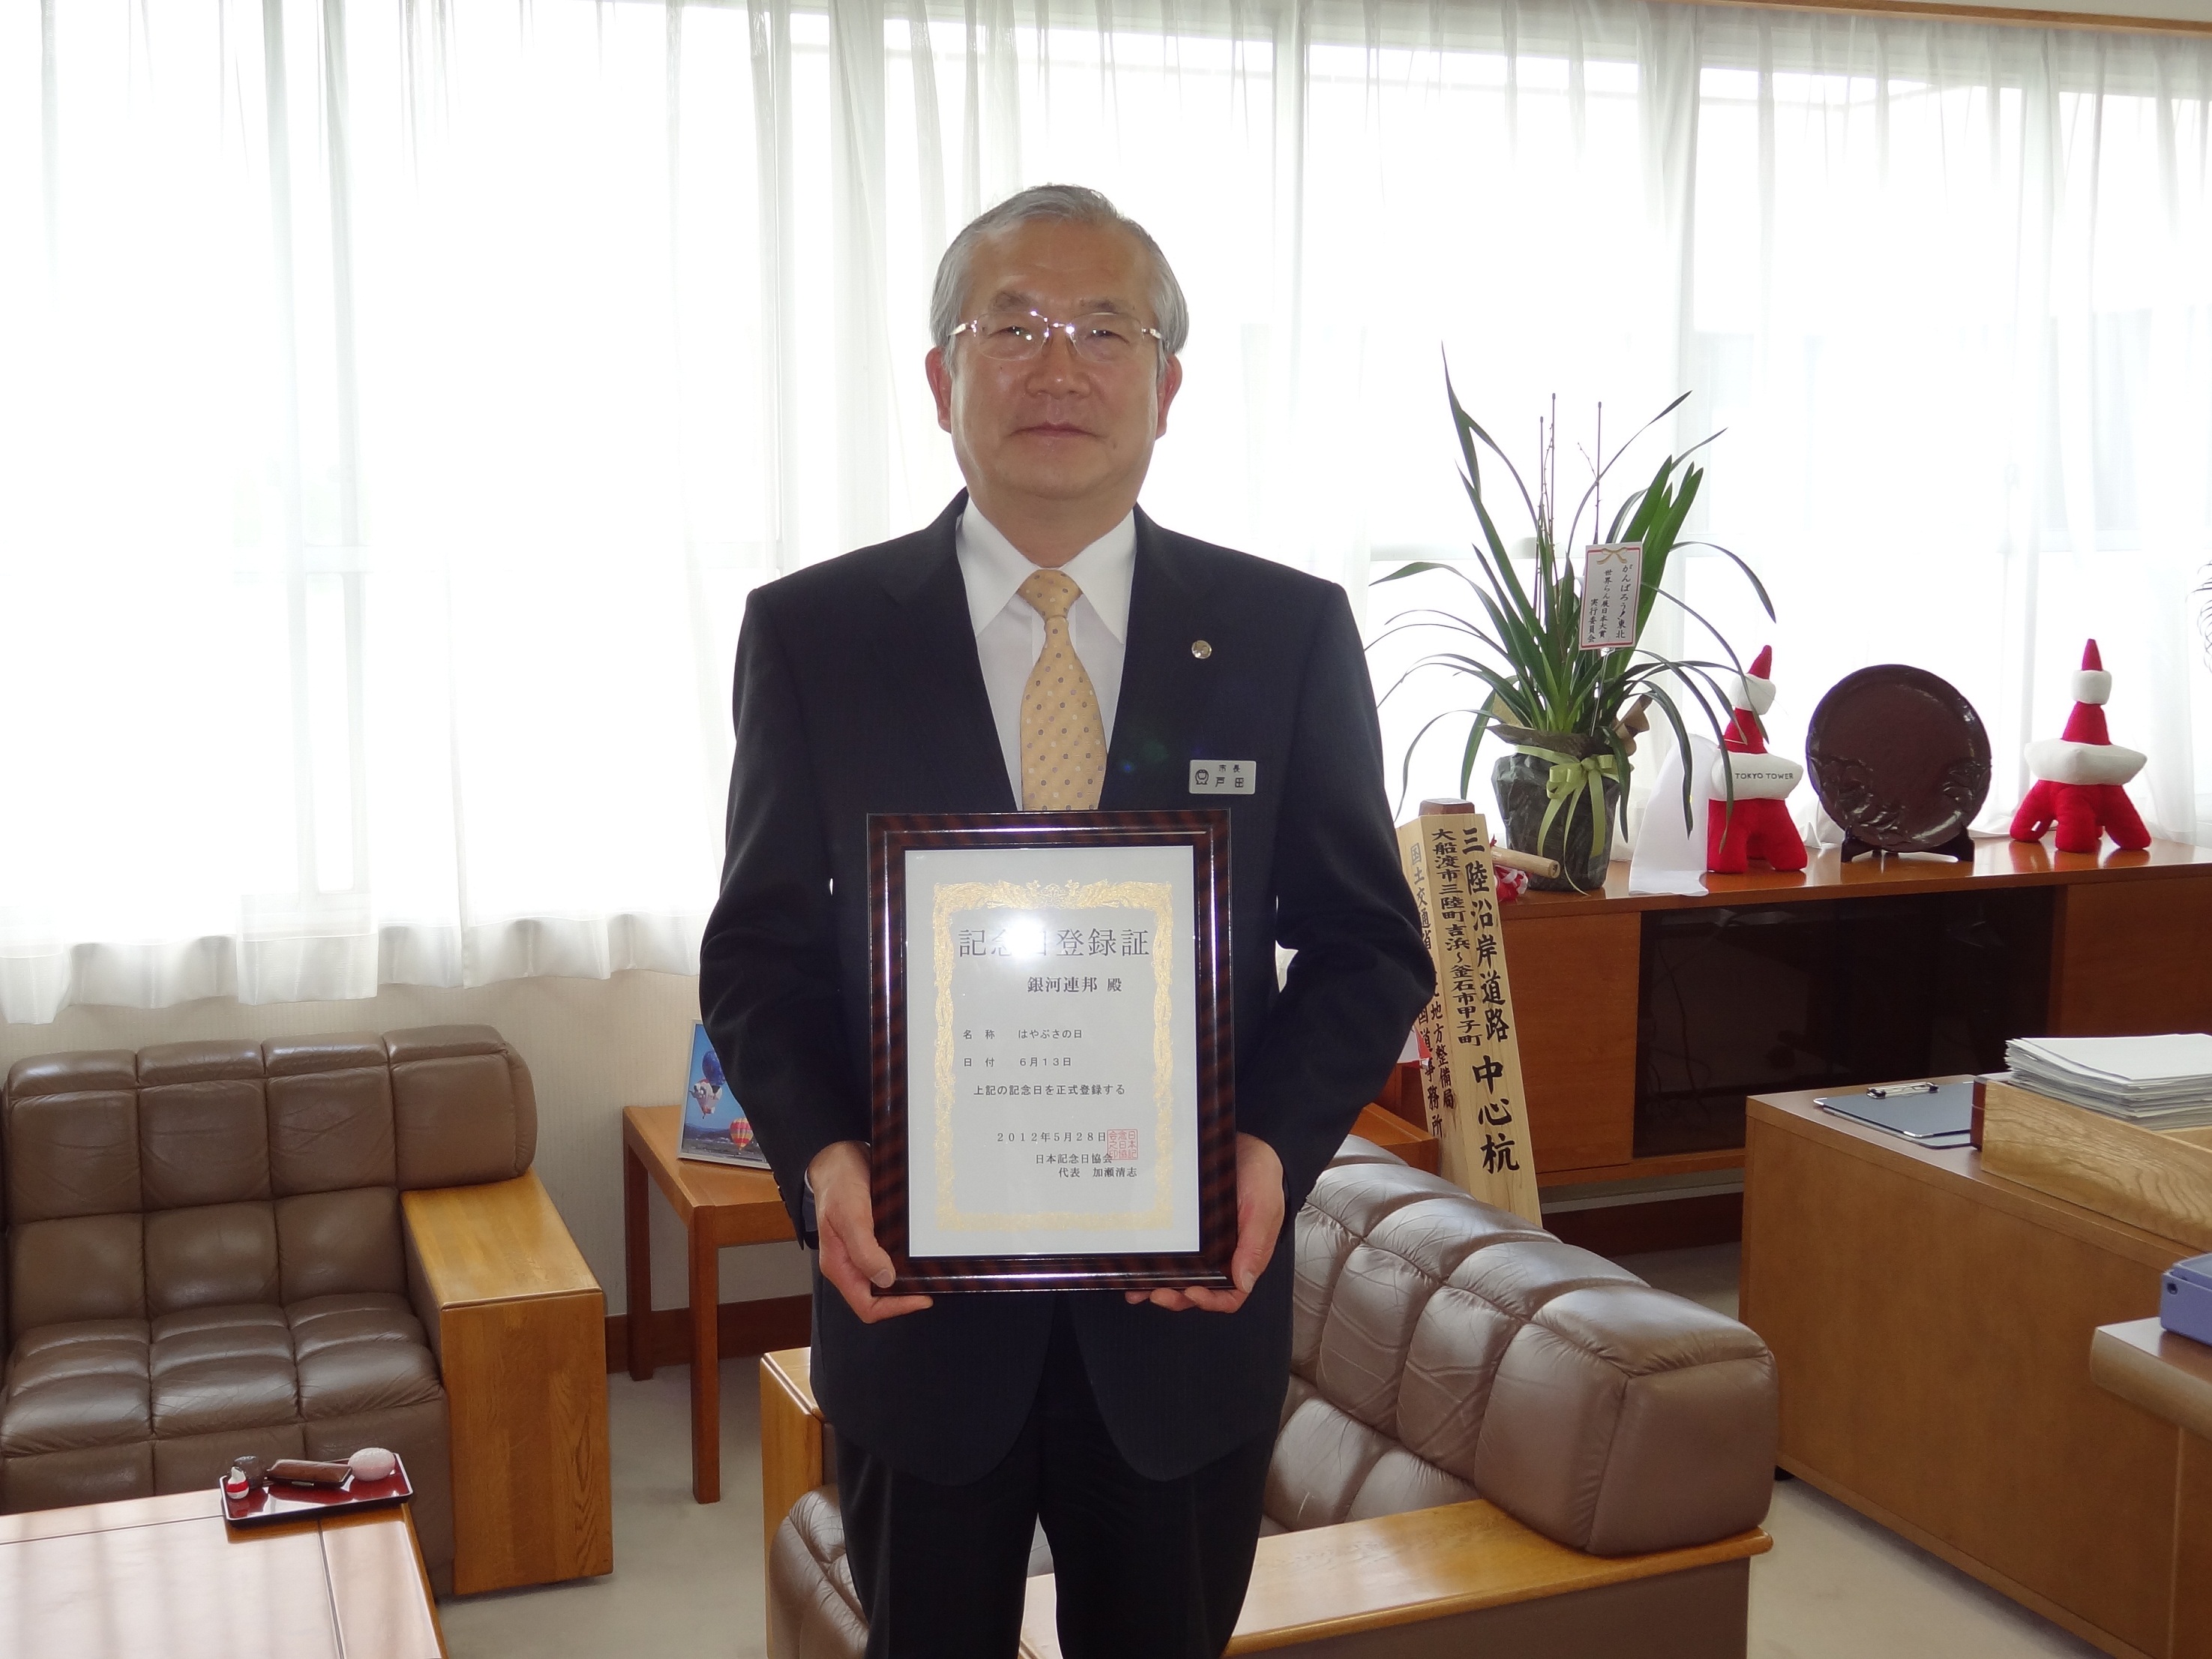 戸田公明大船渡市長が記念日登録証を持っている写真